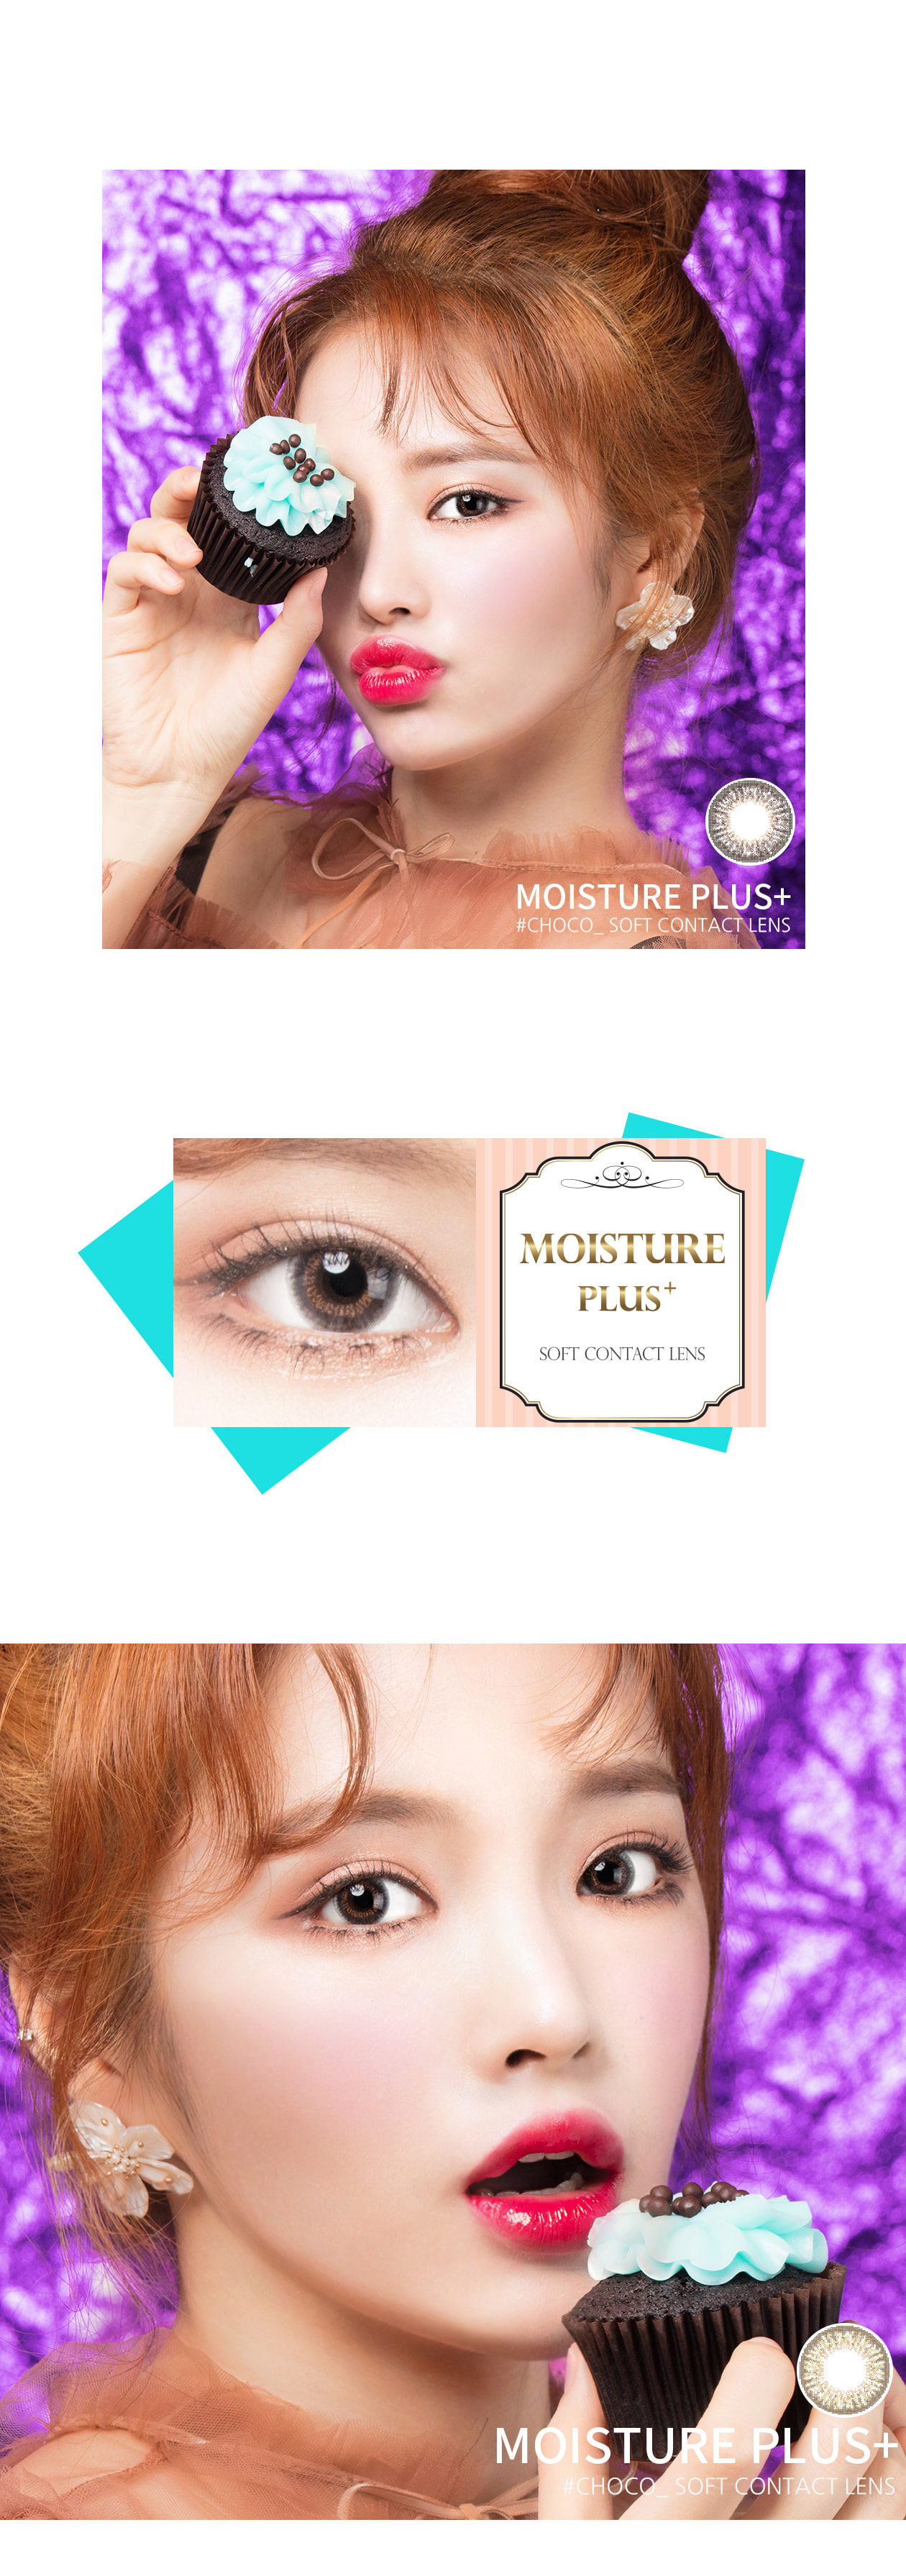 Second description images of Moisture Plus Choco (2pcs) Circle Contact Lens